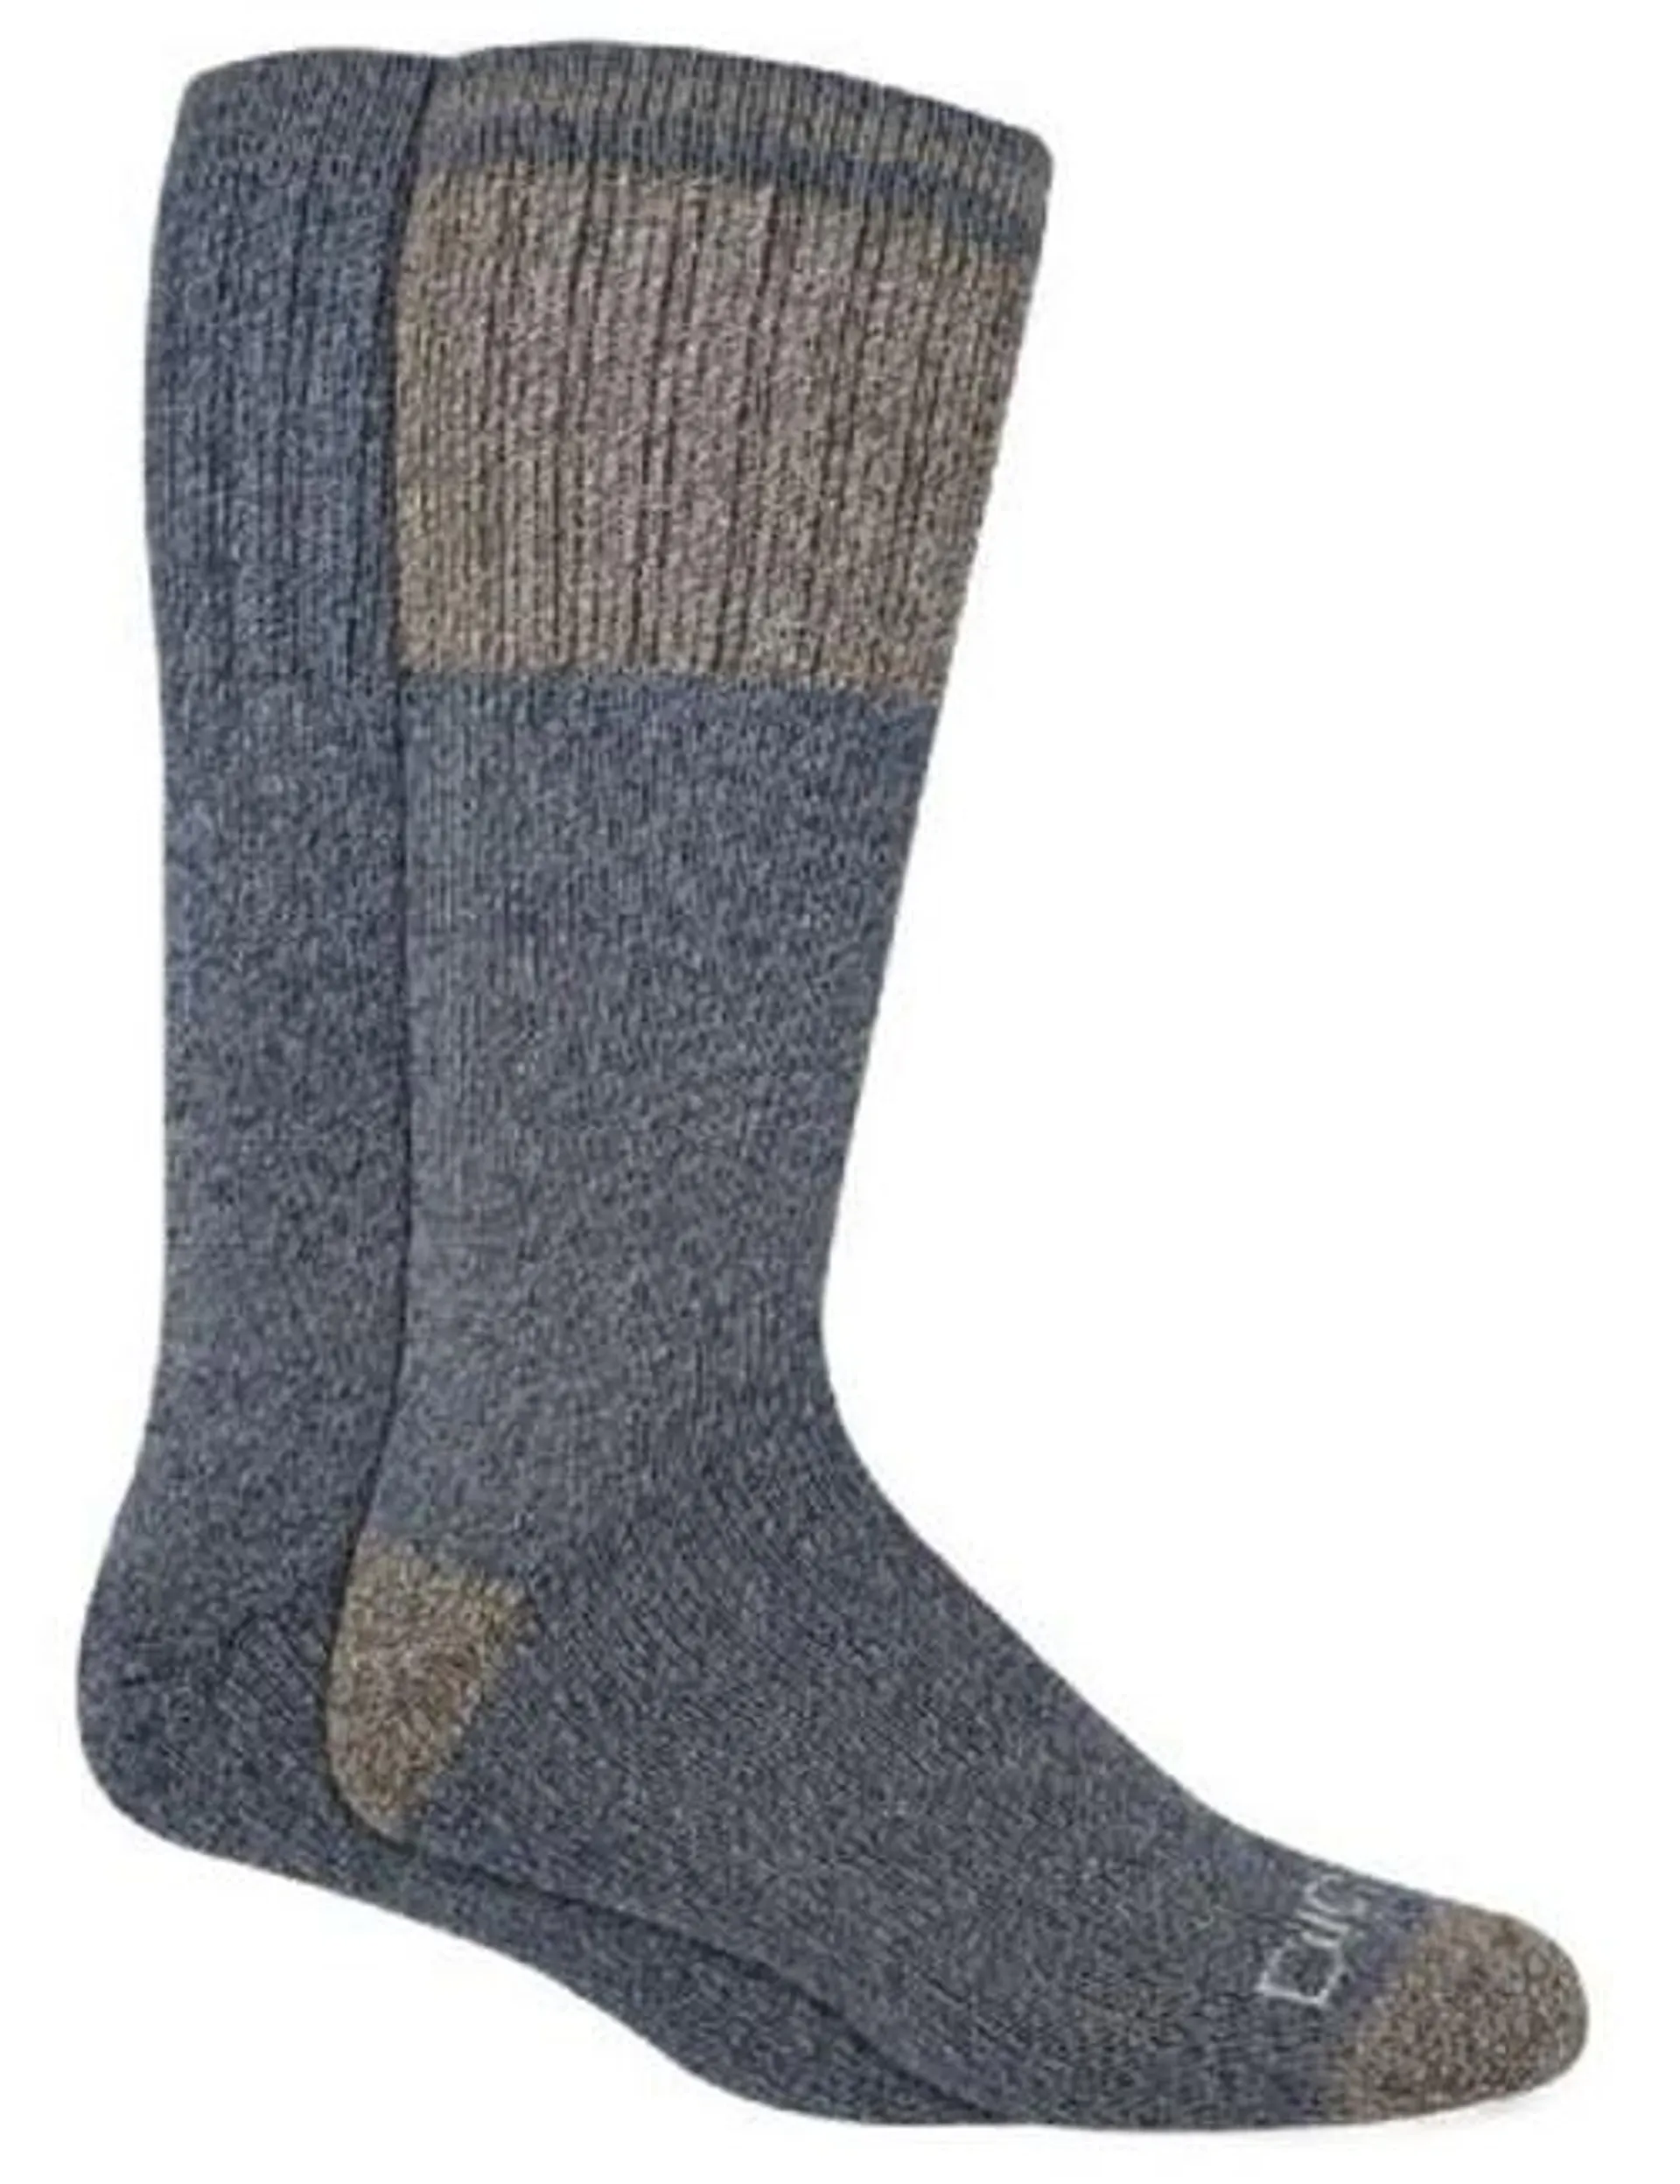 Dickies Men's Grey Charcoal Brushed Thermal Crew Socks - Assorted, 2 Pk